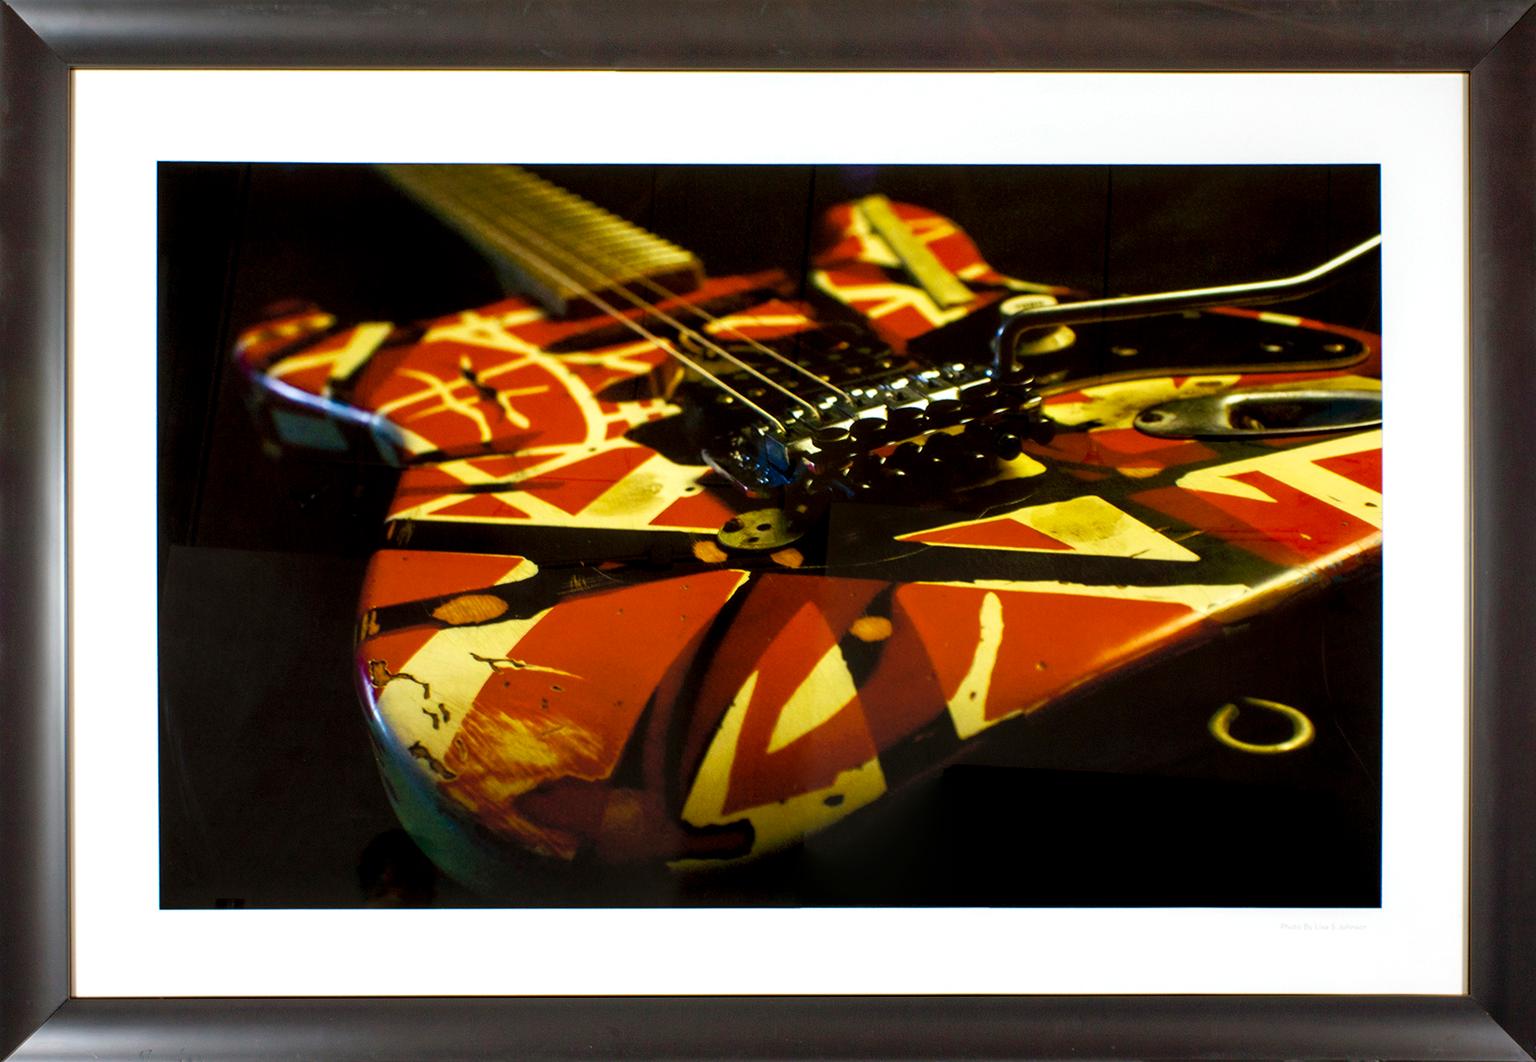 Gerahmte Fotografie "Eddie Van Halen Frankenstrat Guitar" von Lisa S. Preston, aufgenommen für ihr Buch "108 Rock Star Guitars". "Foto von Lisa S. Johnson" auf der Vorderseite in der unteren rechten Ecke. Bildgröße: 31 1/2 x 51 3/4 Zoll. Dieses Foto